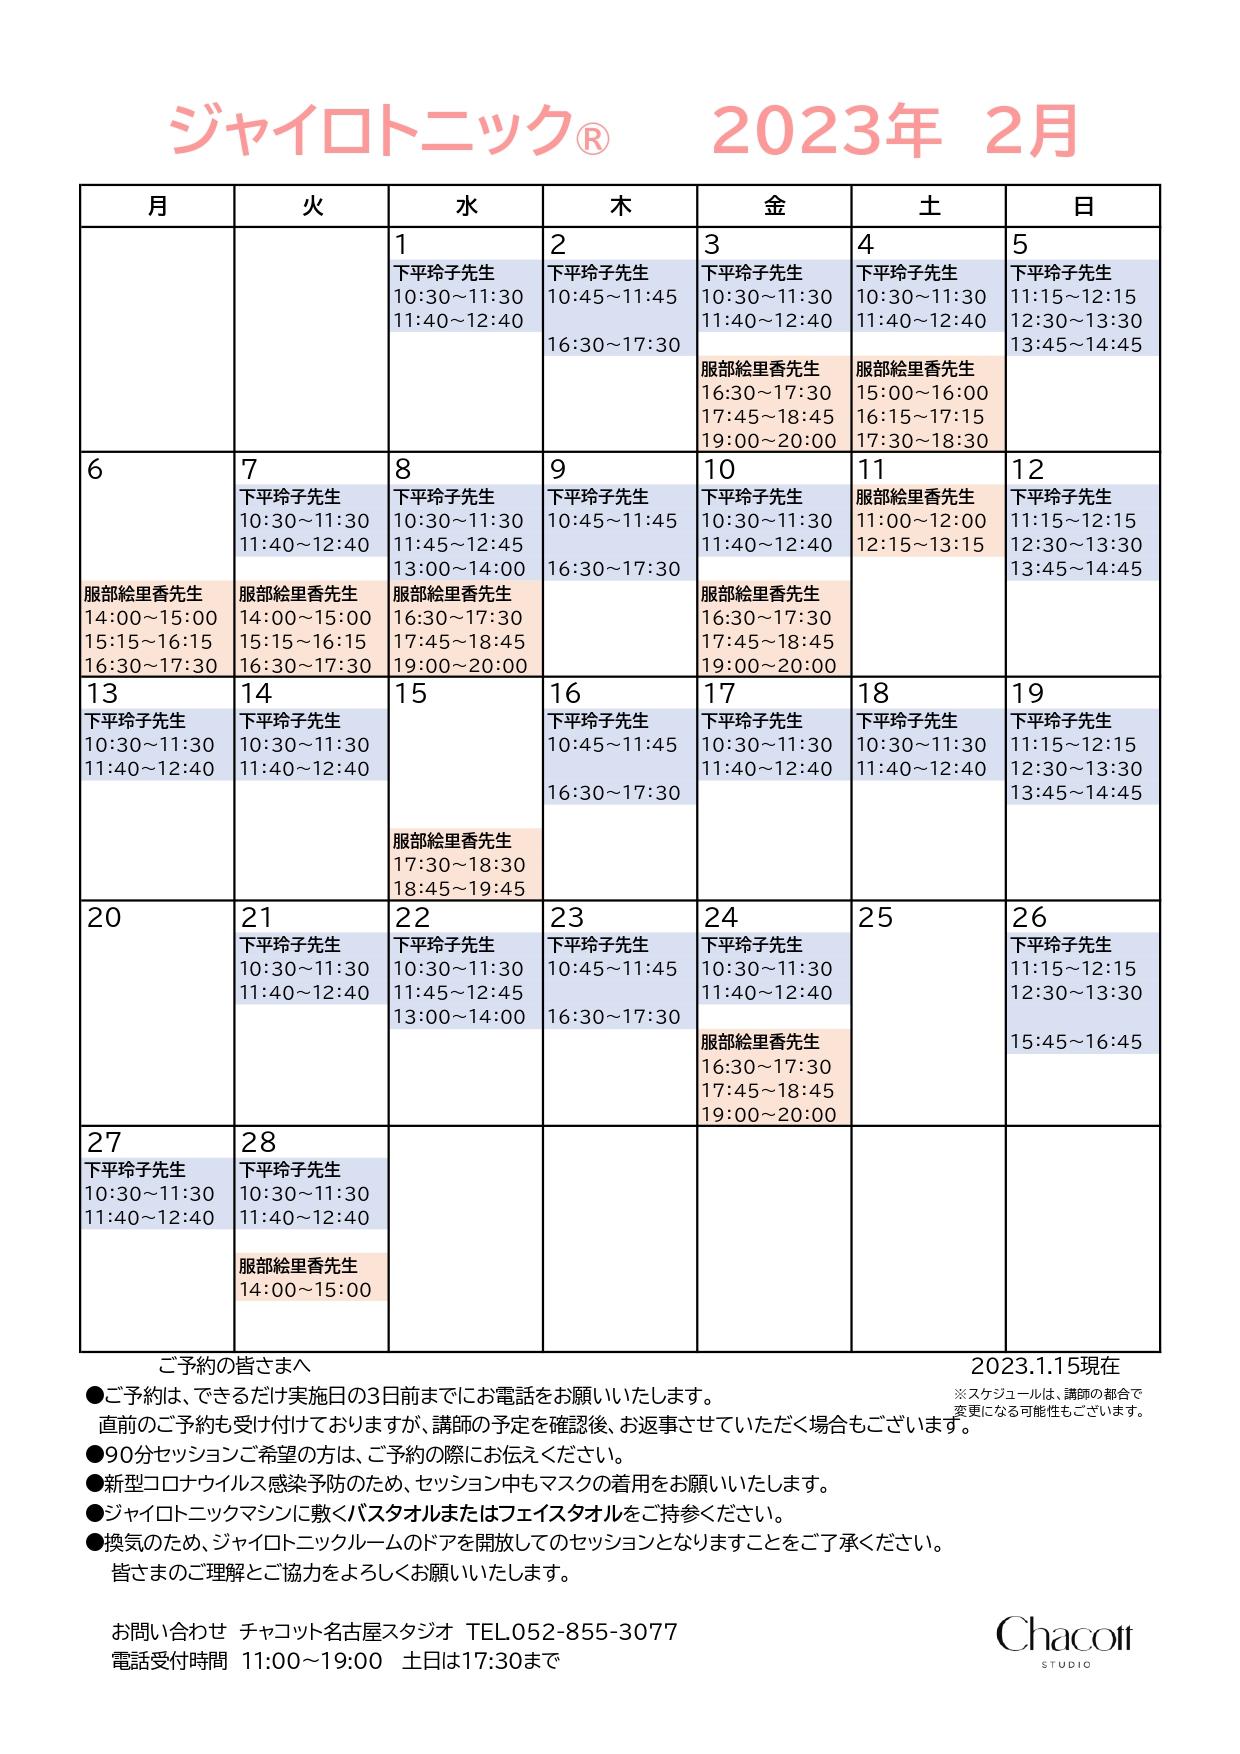 nagoya_gyro_timetable0301.jpg